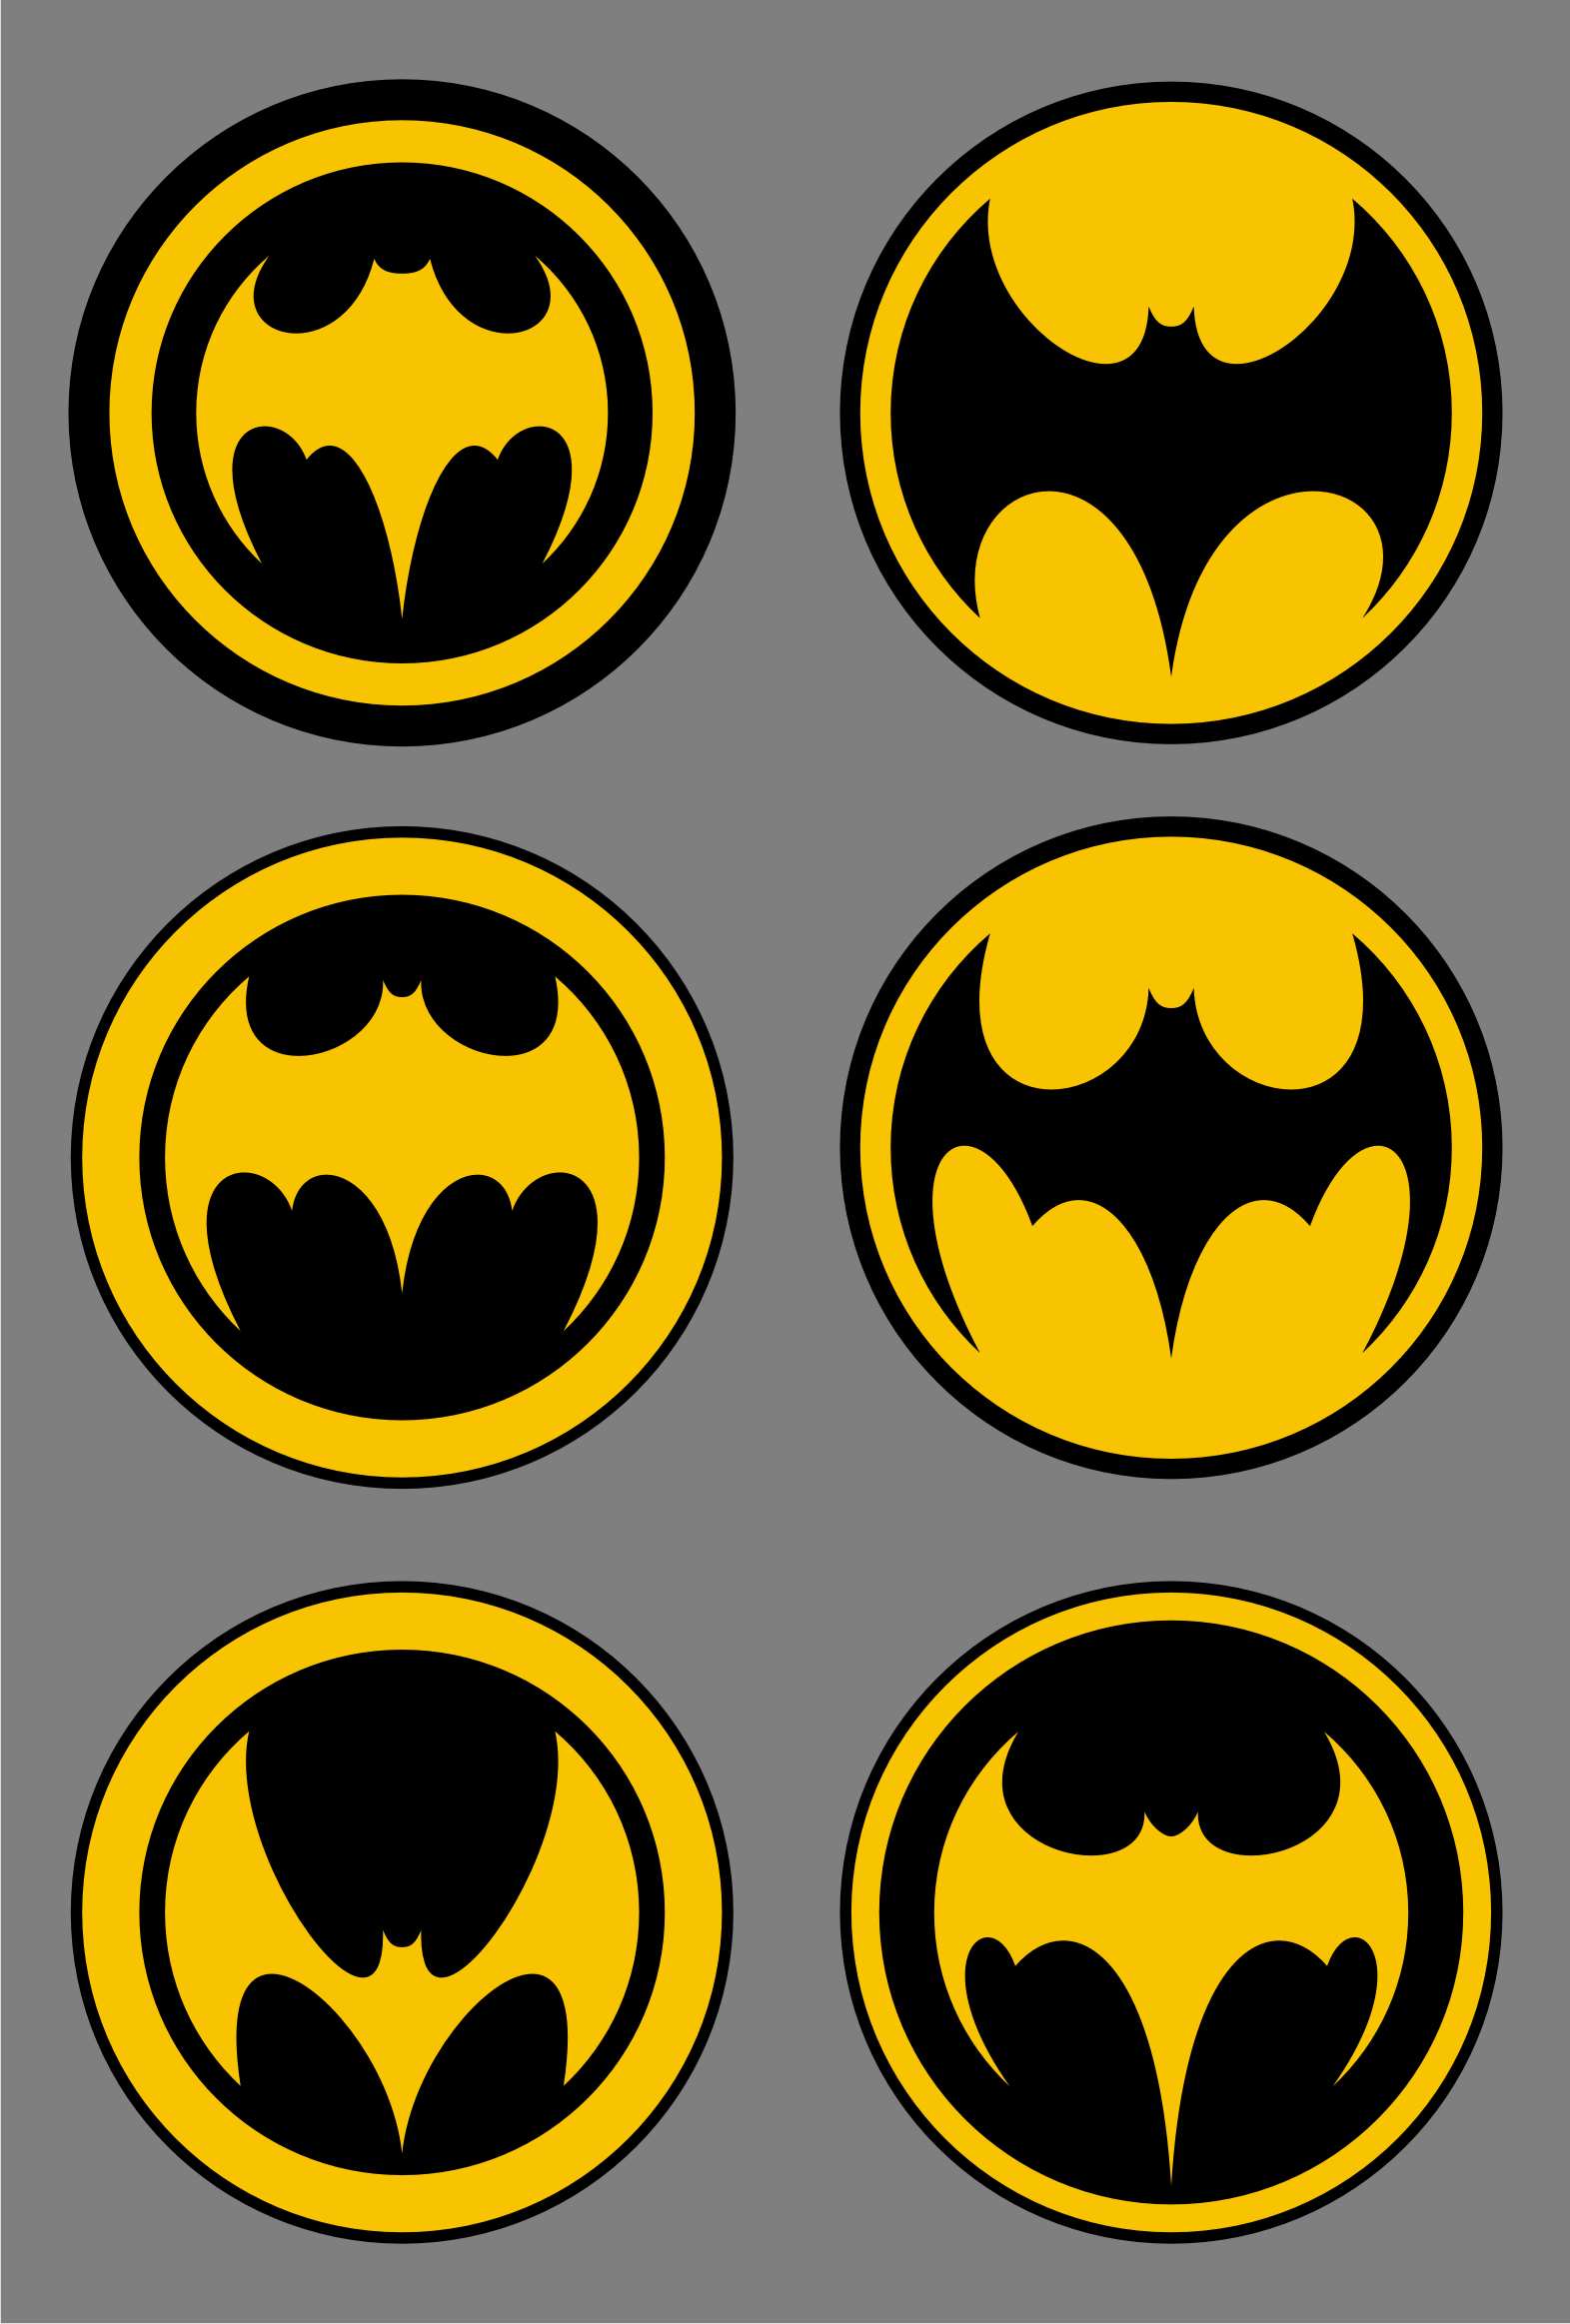 Batman Yellow Logo - Free Free Printable Batman Logo, Download Free Clip Art, Free Clip ...